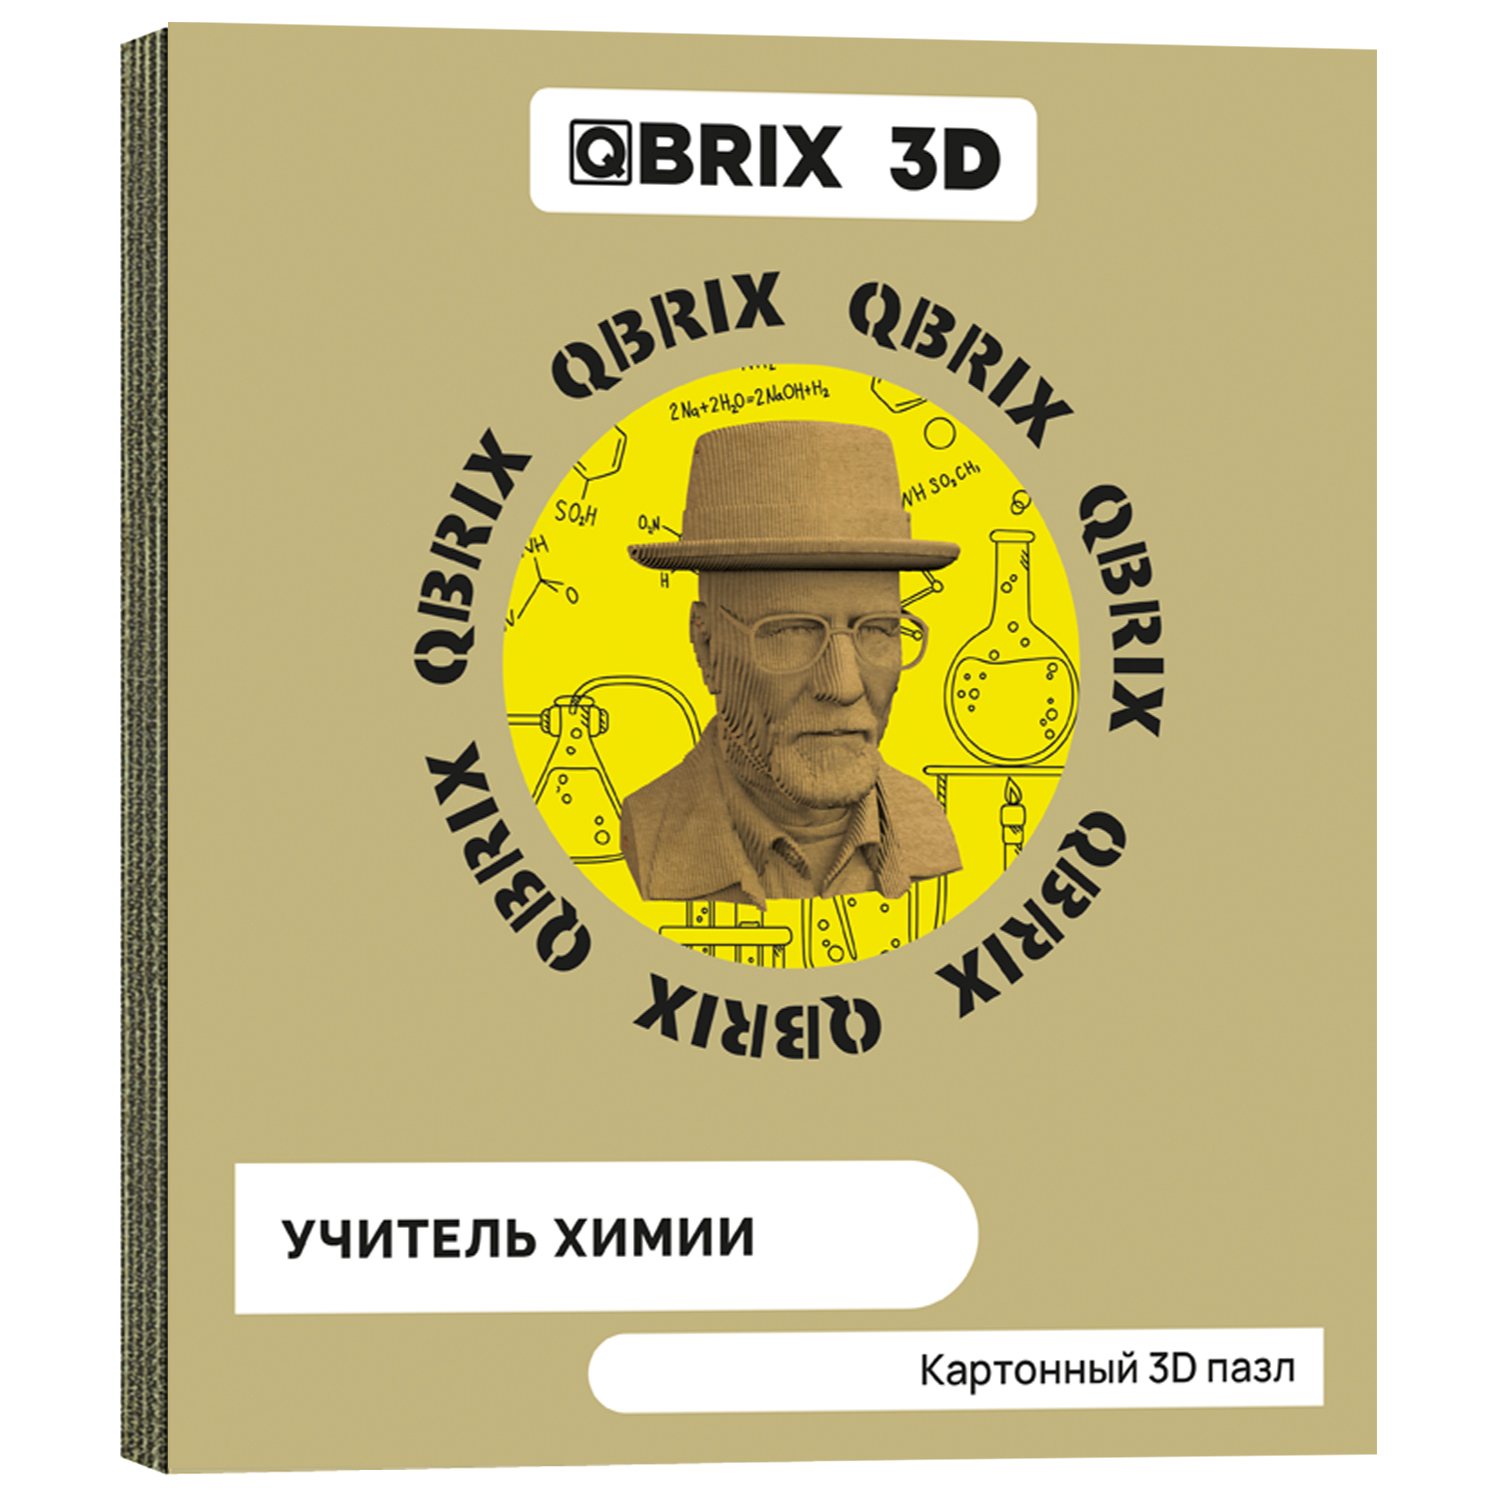 Конструктор QBRIX 3D картонный Учитель химии 20039 20039 - фото 1